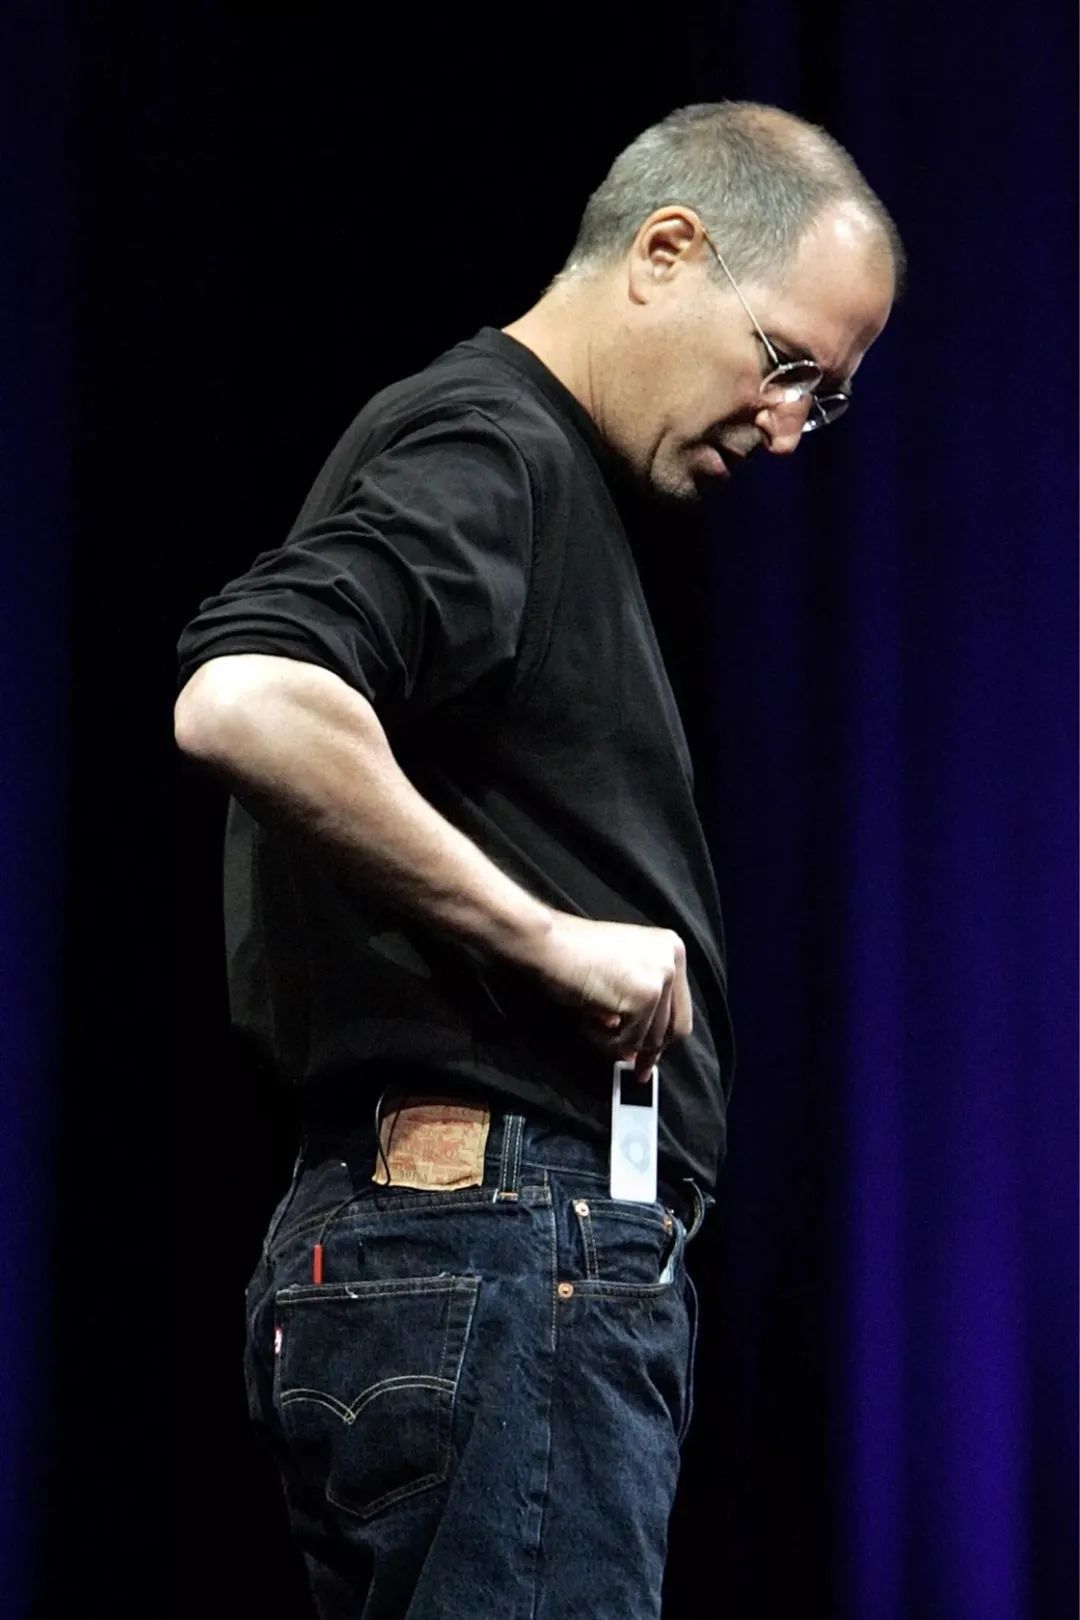 苹果停产最后一台iPod，热卖20年的它究竟有怎样的魔力？